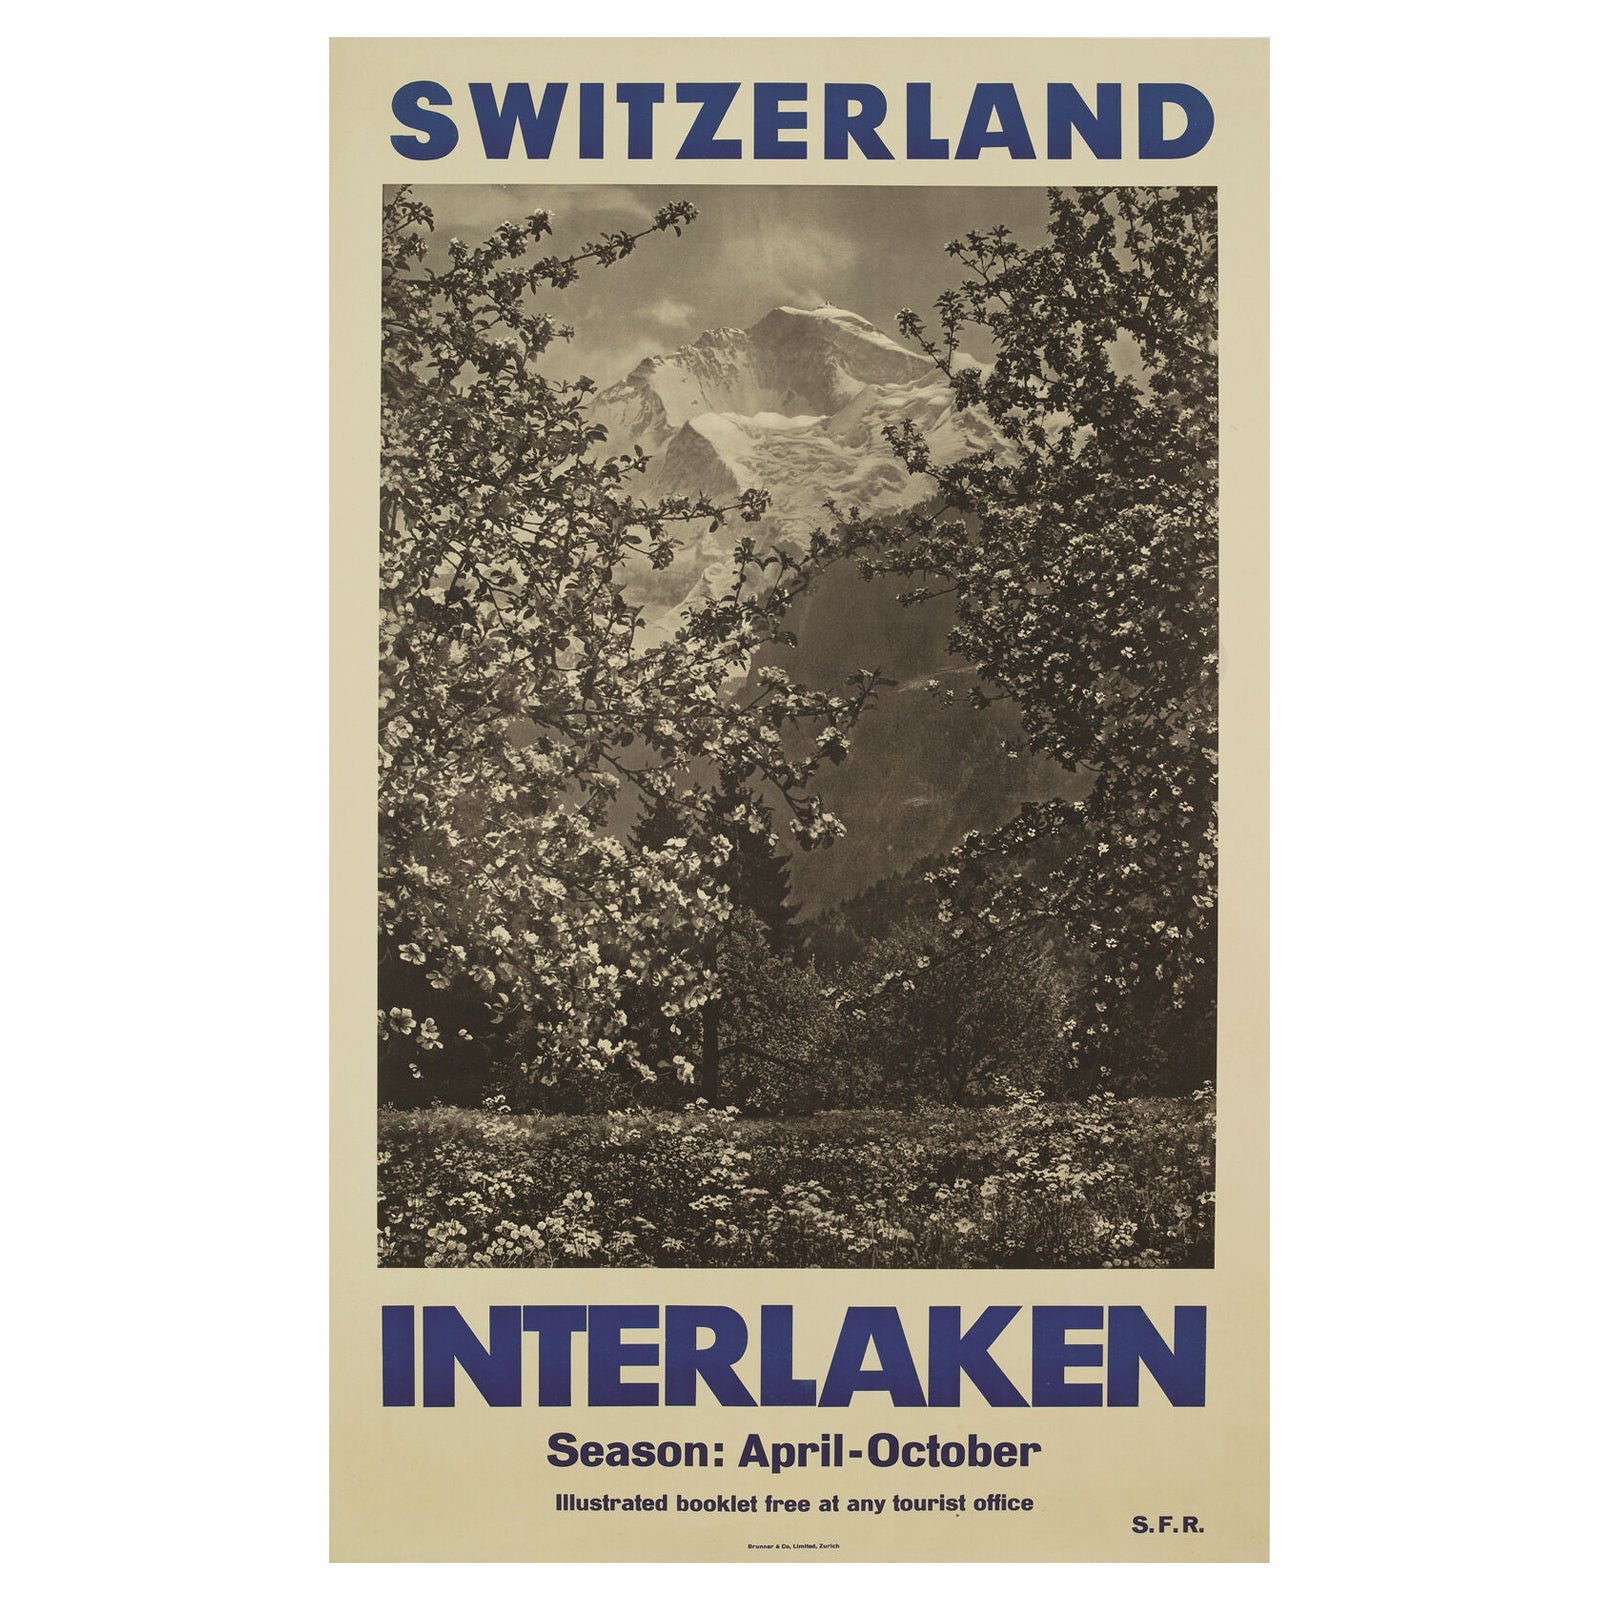 Original Vintage Swiss Travel Poster, Interlaken, Mountains and Ski, 1950